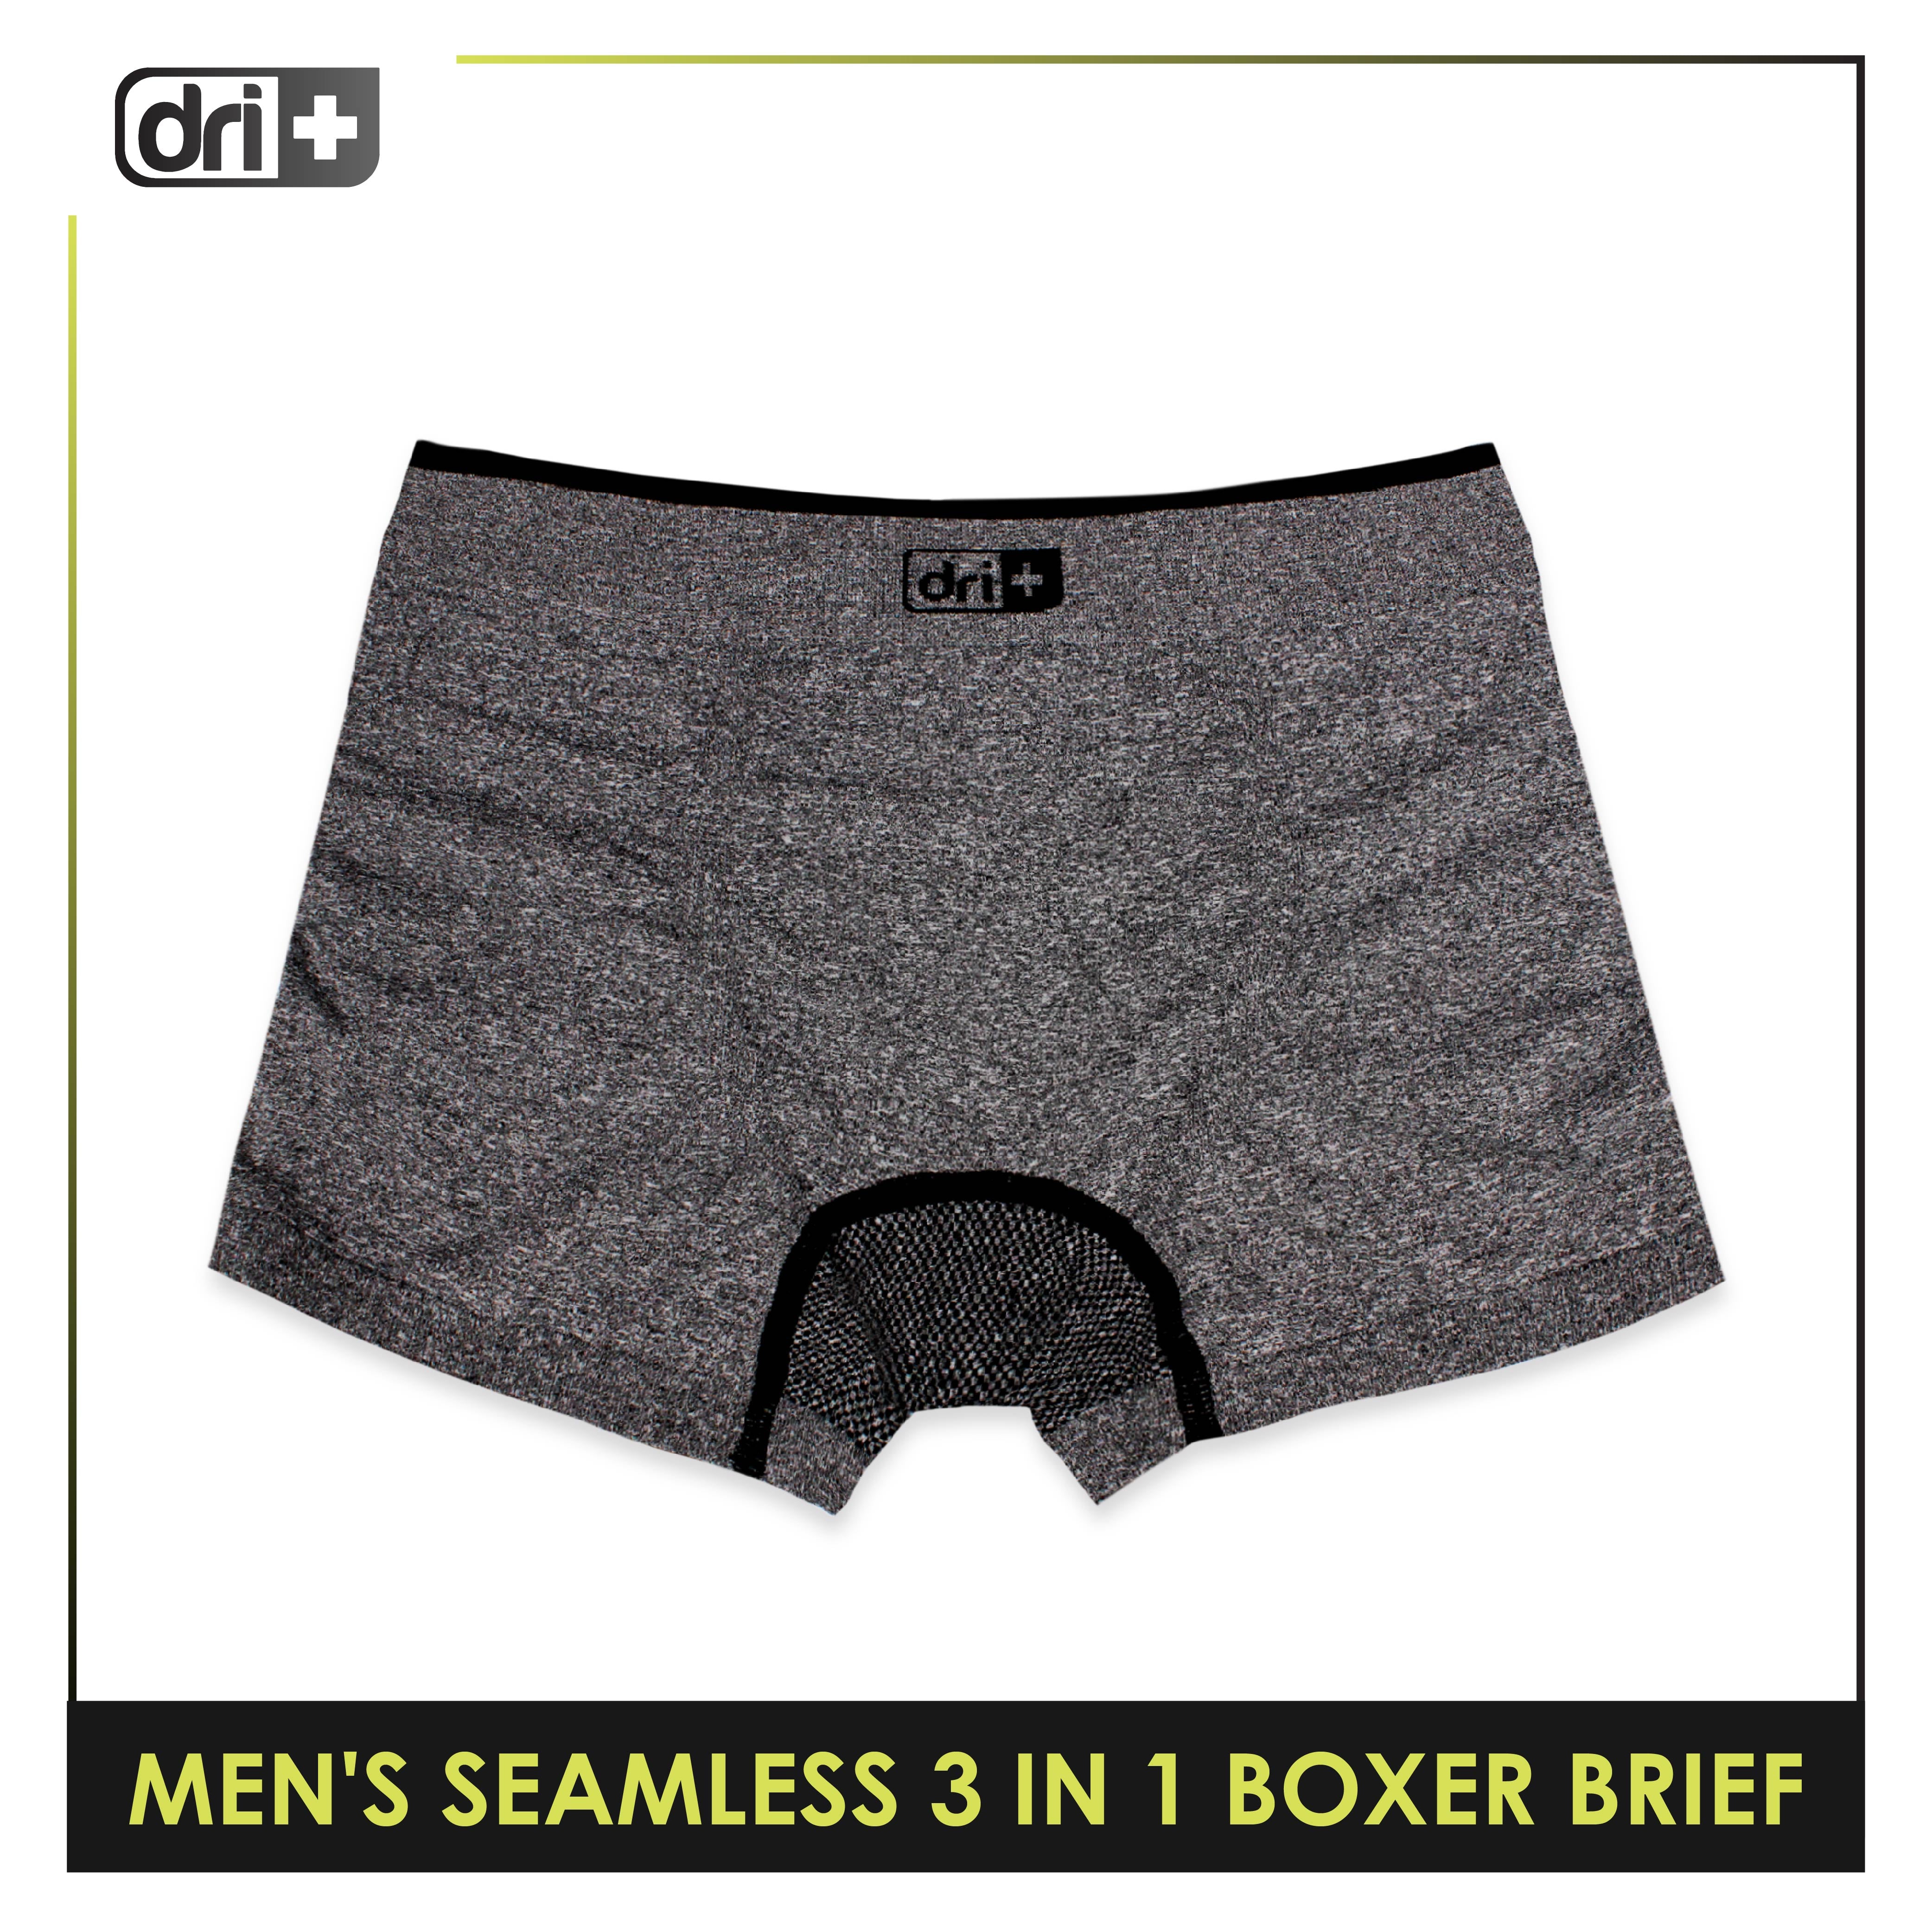 optioneel Vaardigheid borduurwerk Dri Plus Men's Seamless Sports Boxers Brief 3 pieces in a pack ODMBBG1101 –  burlingtonph